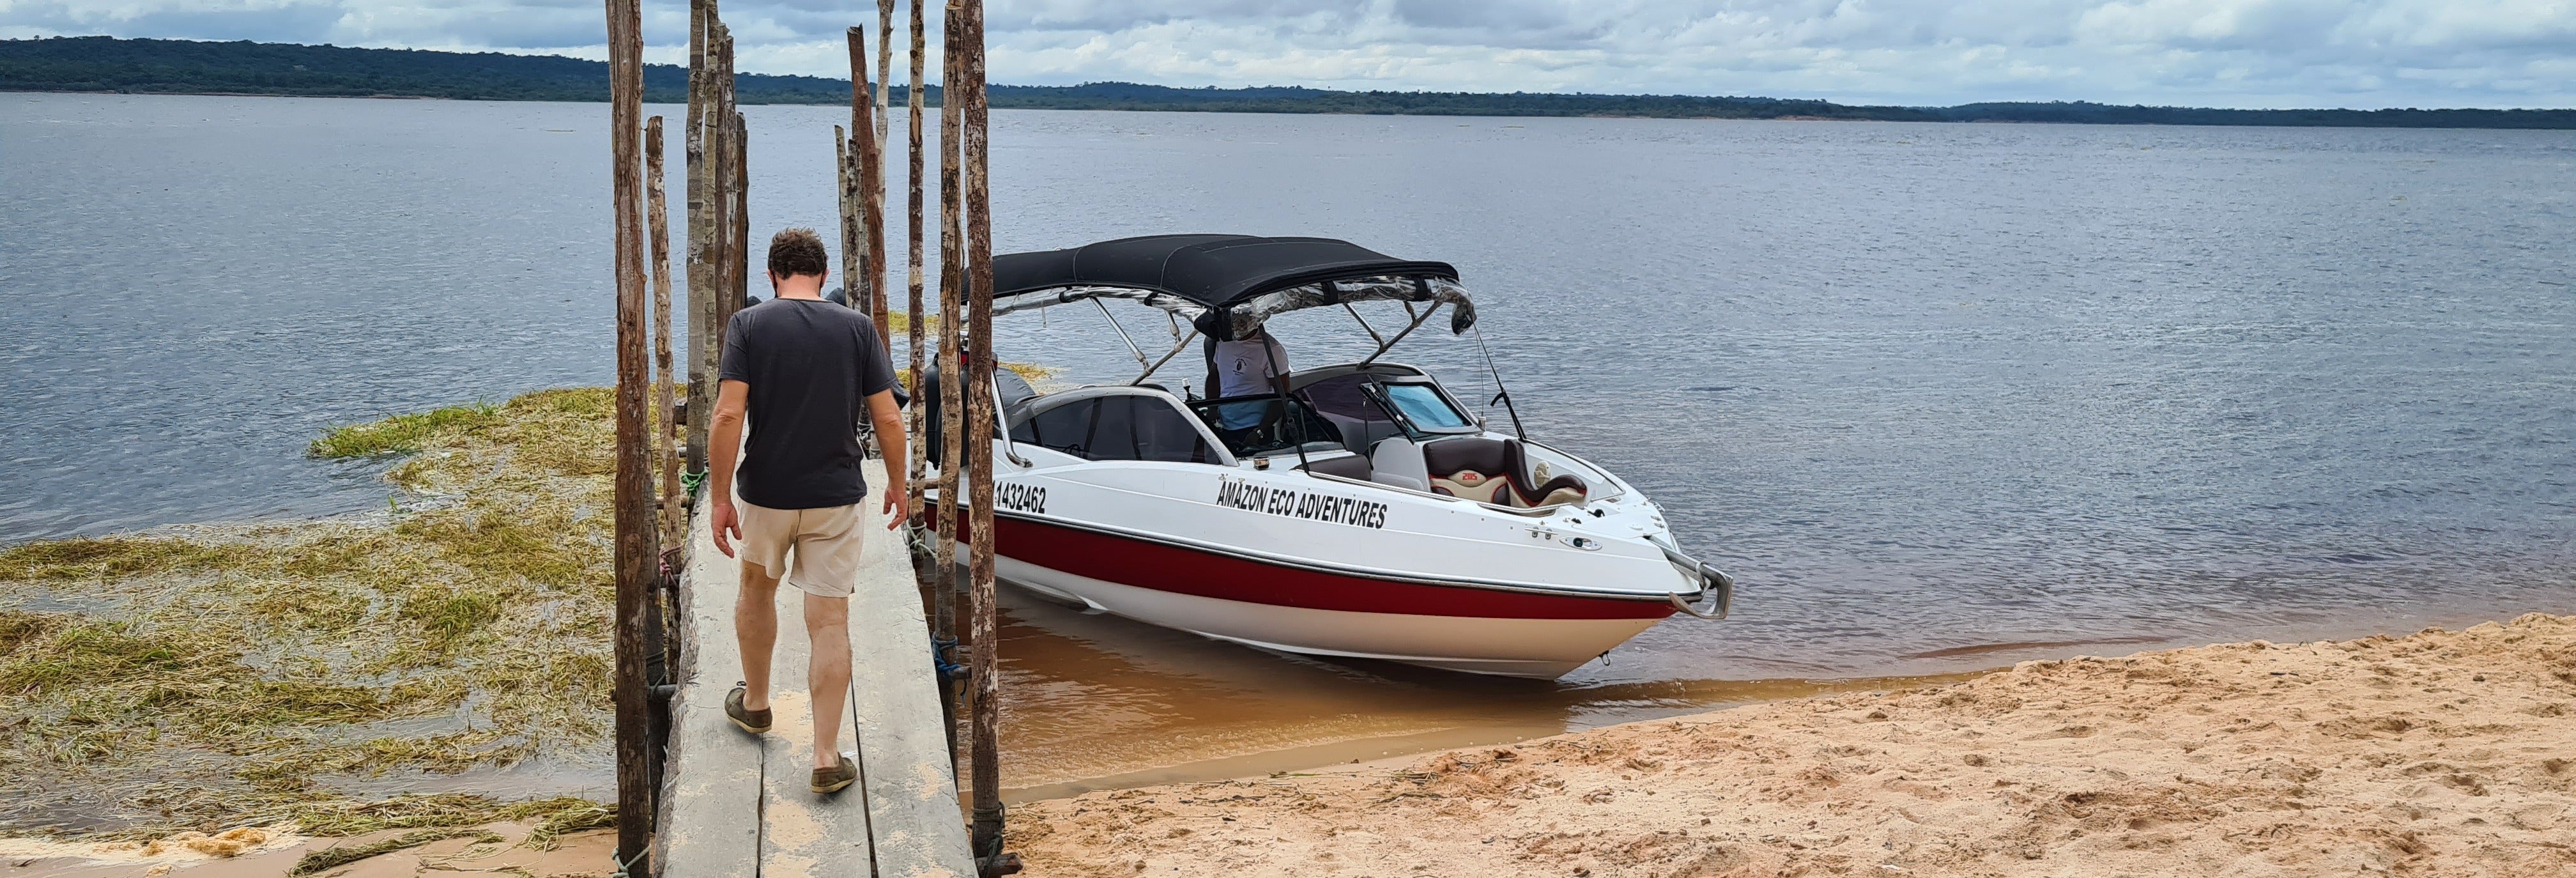 Passeio de barco privado pela Amazônia